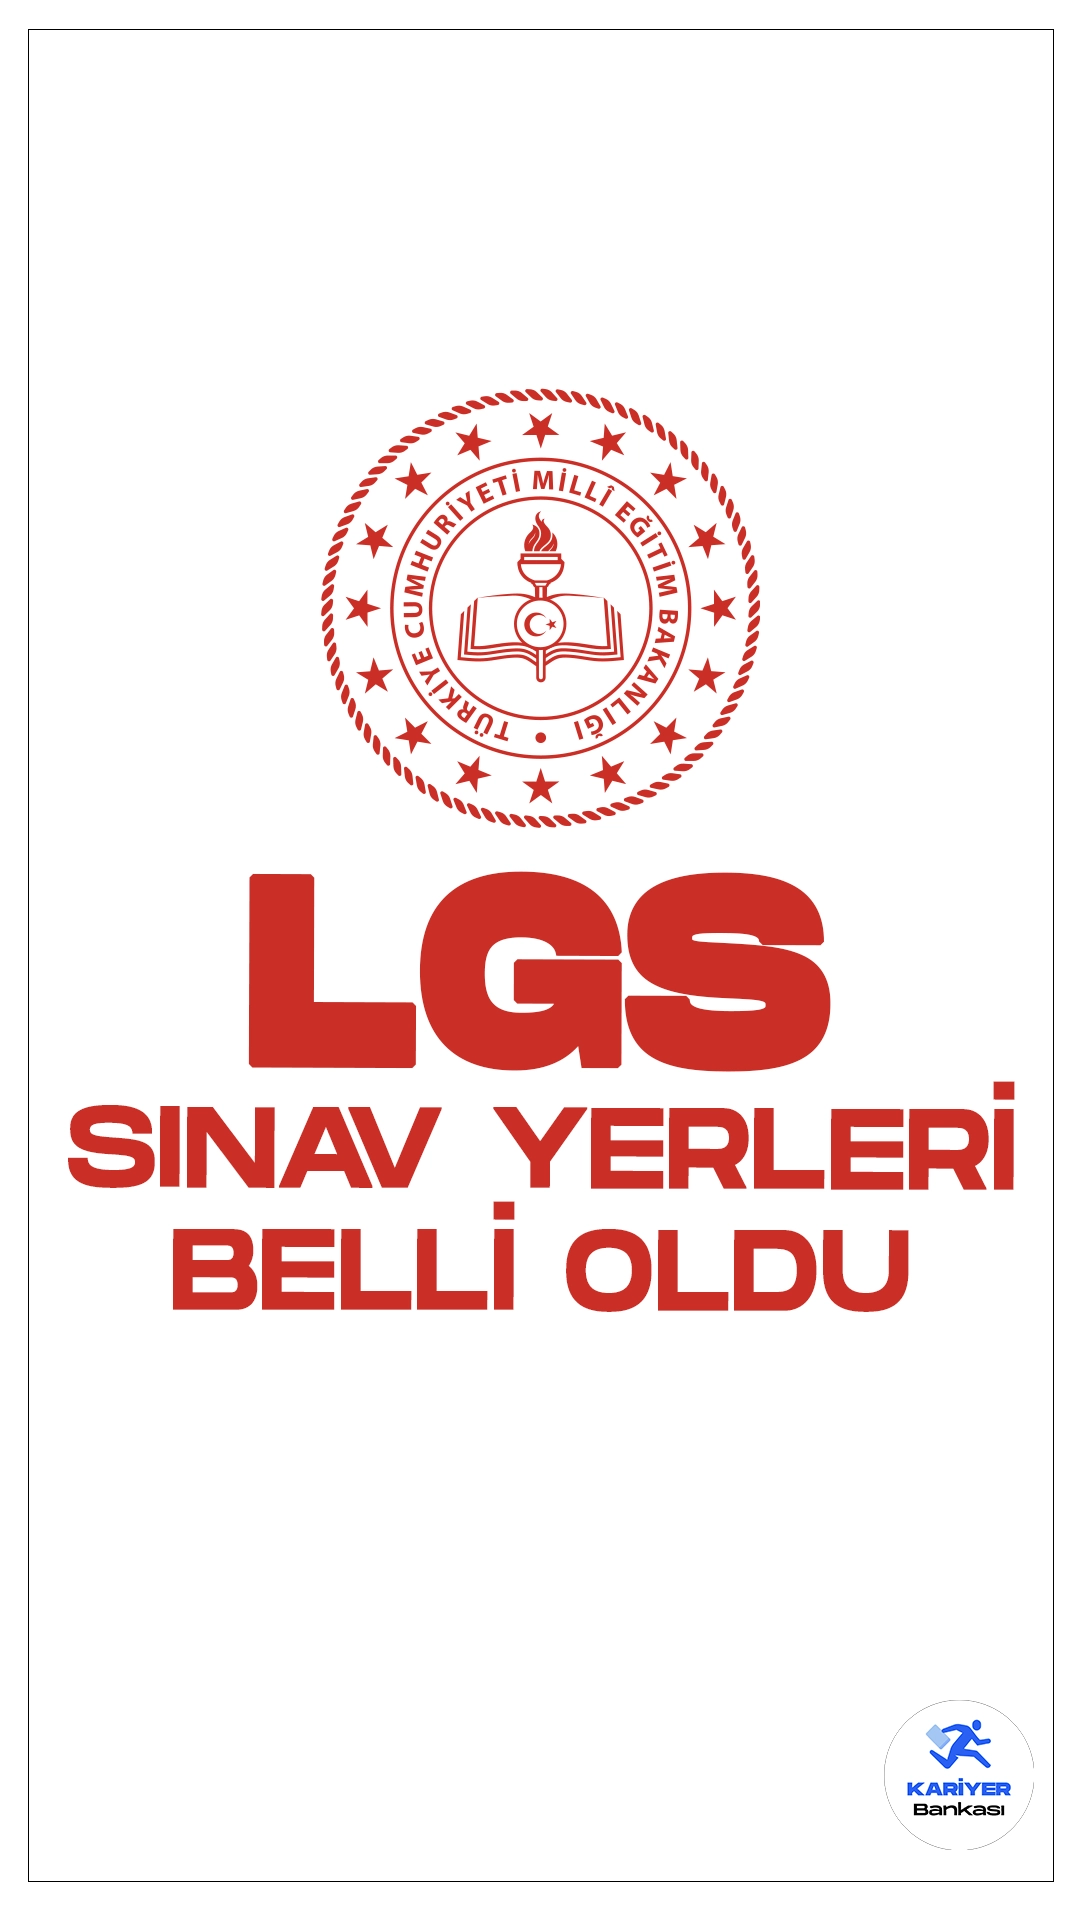 LGS Giriş Belgeleri Erişime Açıldı. Milli Eğitim Bakanlığı sayfasından yayımlanan duyuruda, LGS kapsamındaki merkezî sınava yönelik sınav merkezi, bina, salon ve sıra bilgileri ile sınav tedbirlerine ilişkin bilgilerin yayımlandığı aktarıldı.